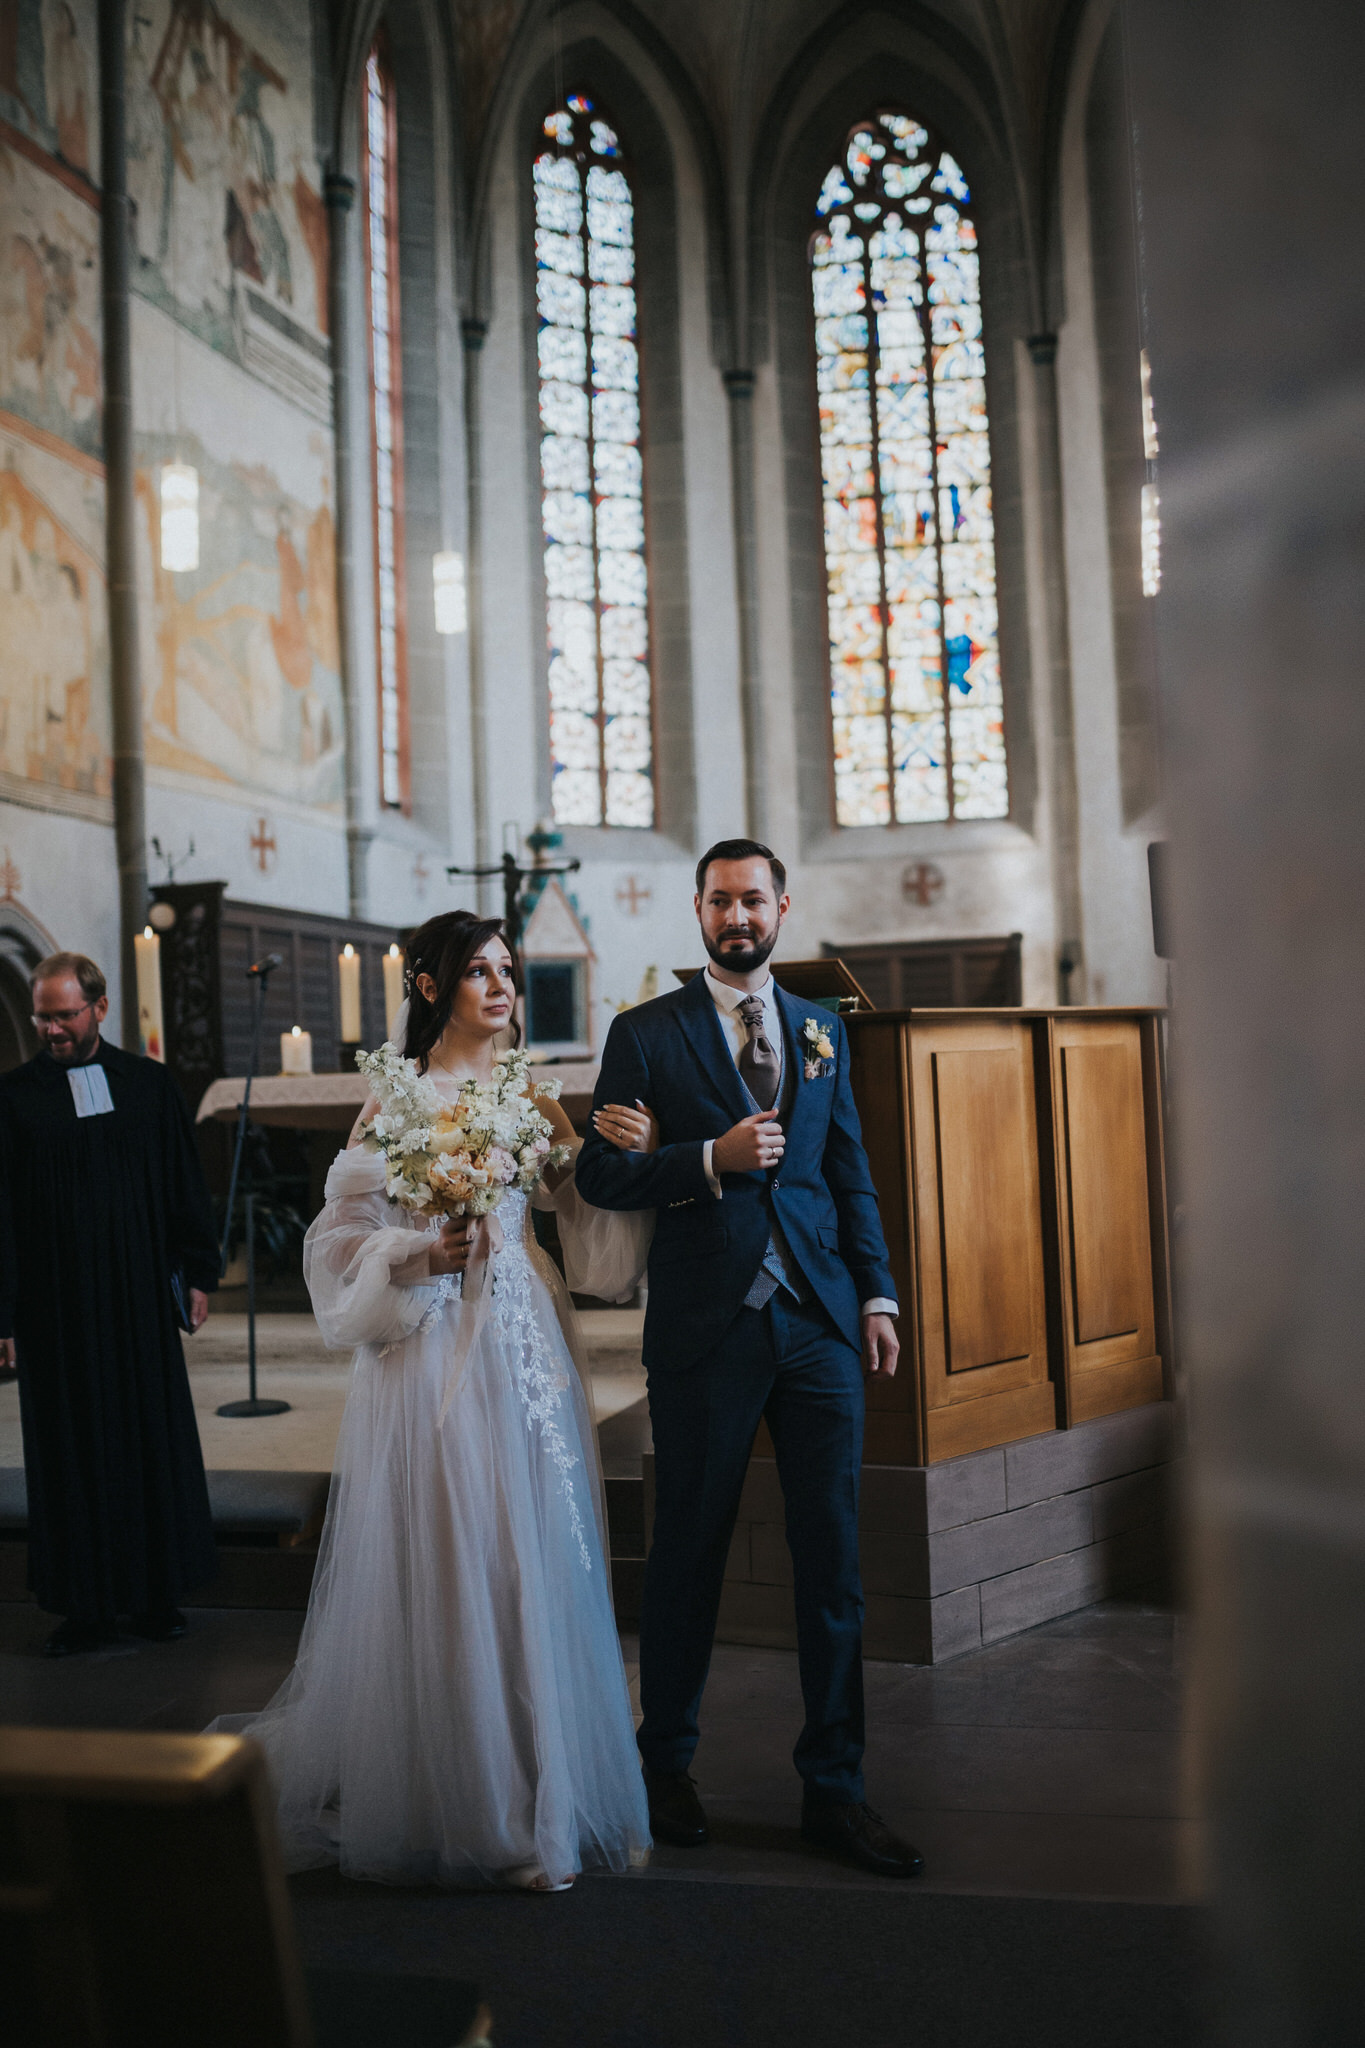 Romantische kirchliche Trauung in der St. Georgs Kirche, Immenhausen – Das Brautpaar gibt sich das Ja-Wort in einer feierlichen Zeremonie, umhüllt von sakraler Stimmung und liebevoller Gemeinschaft.